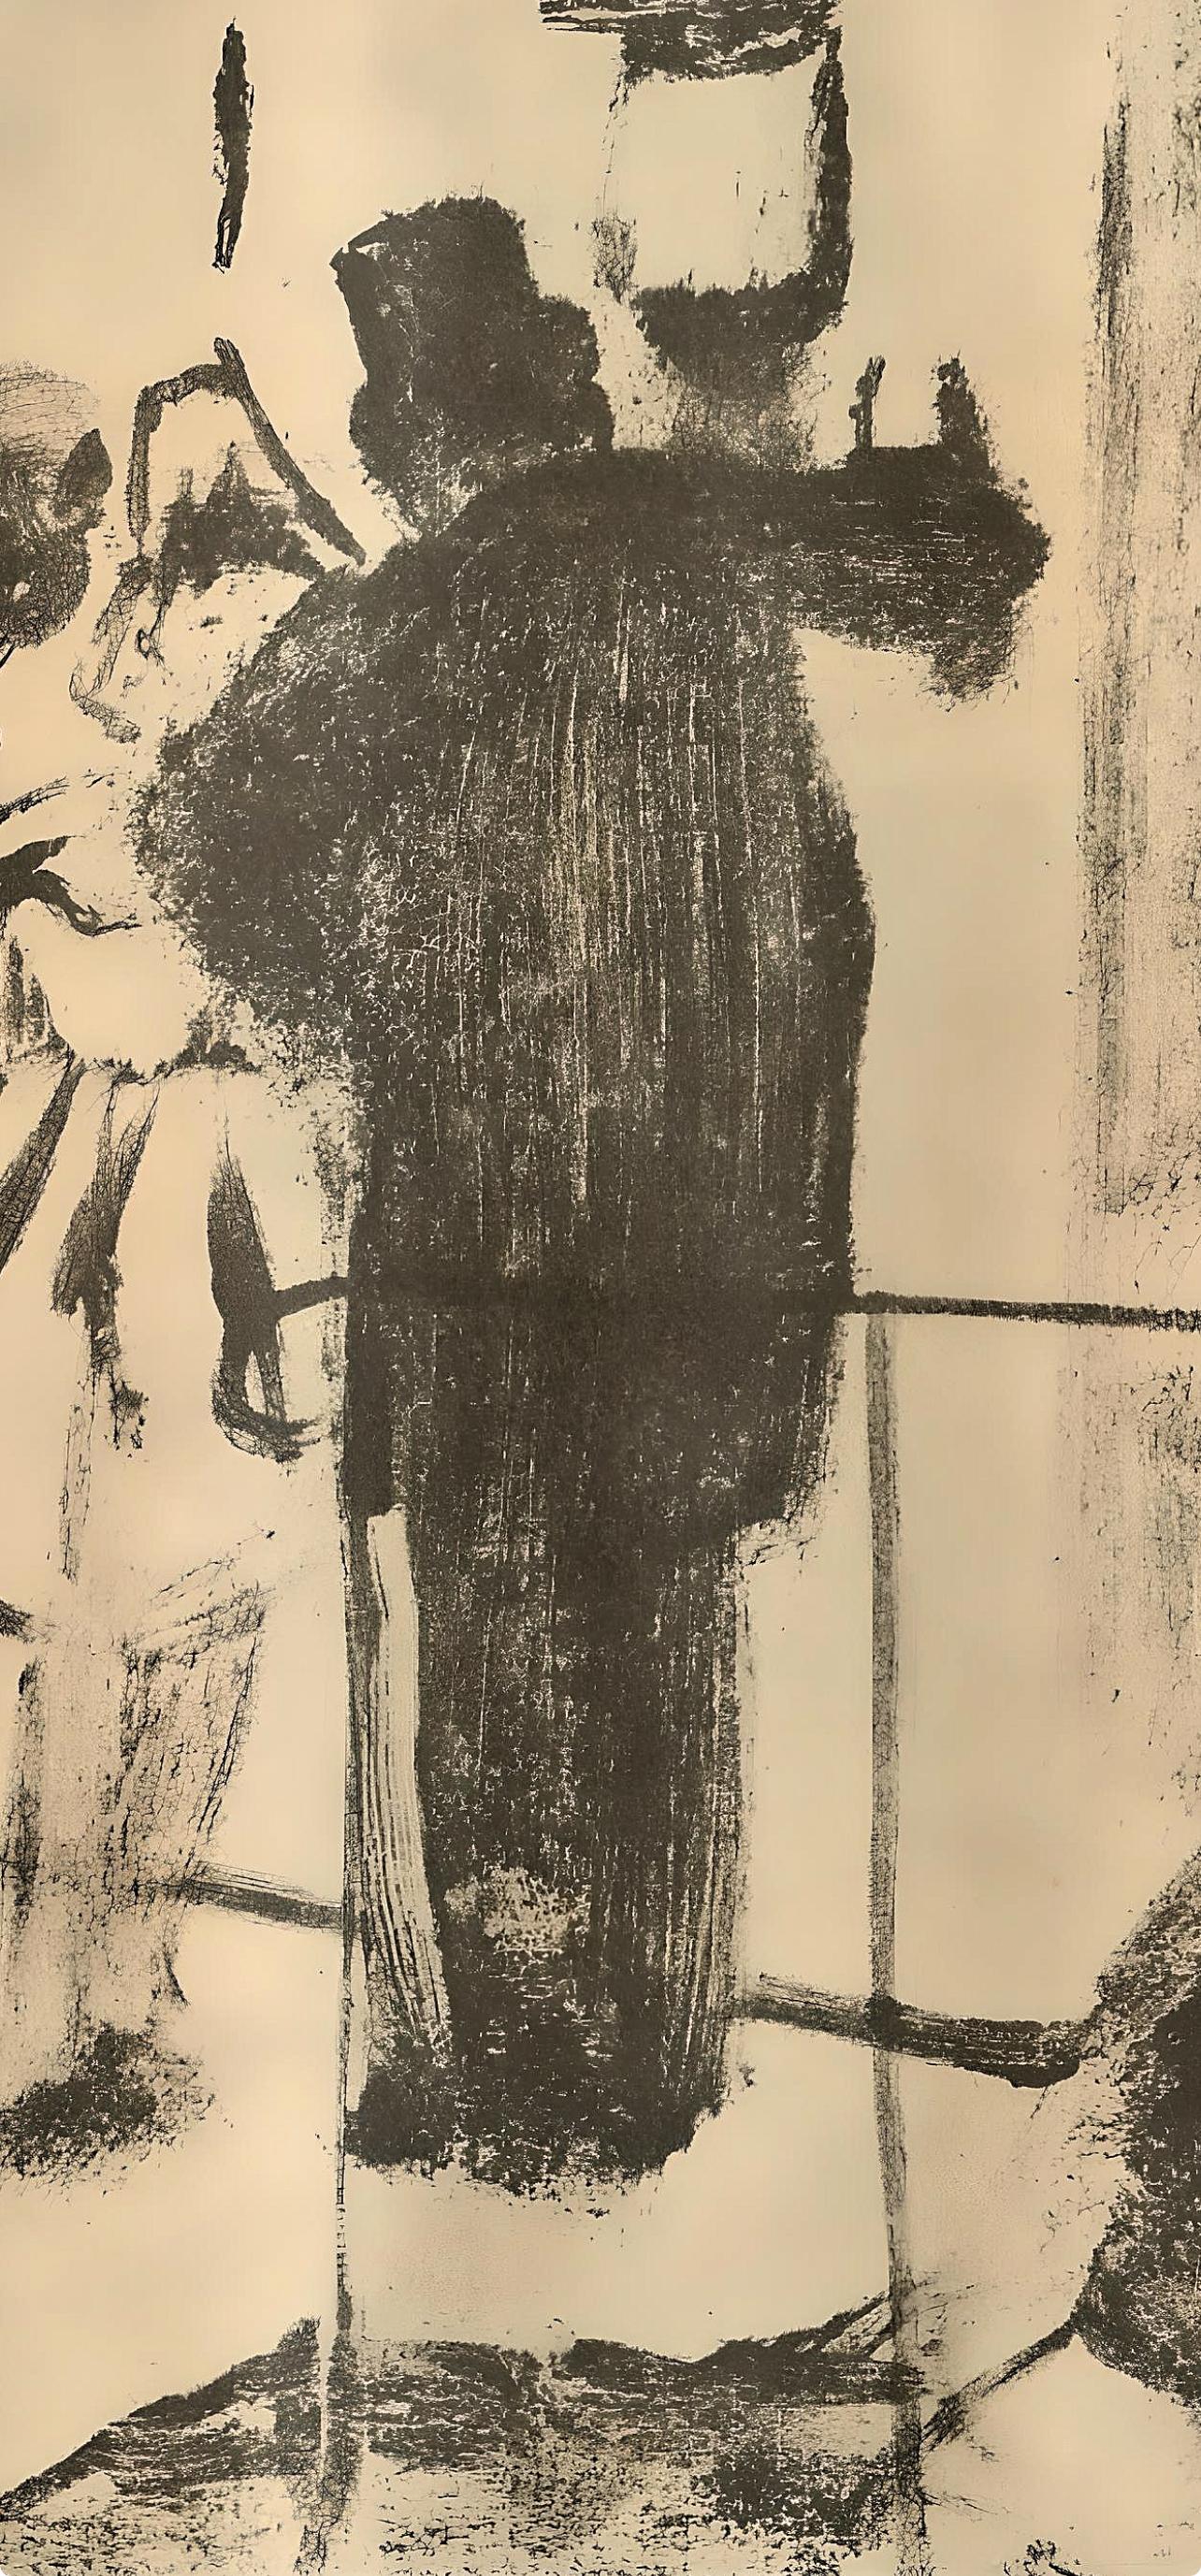 Kupferstich auf Marais-Velin-Papier. Unsigniert und nicht nummeriert, wie ausgegeben. Guter Zustand; nie gerahmt oder mattiert. Anmerkungen: Aus dem Band, E. Degas Les Monotypes, 1948. Herausgegeben von Quatre Chemins-Editart, Paris; gedruckt von